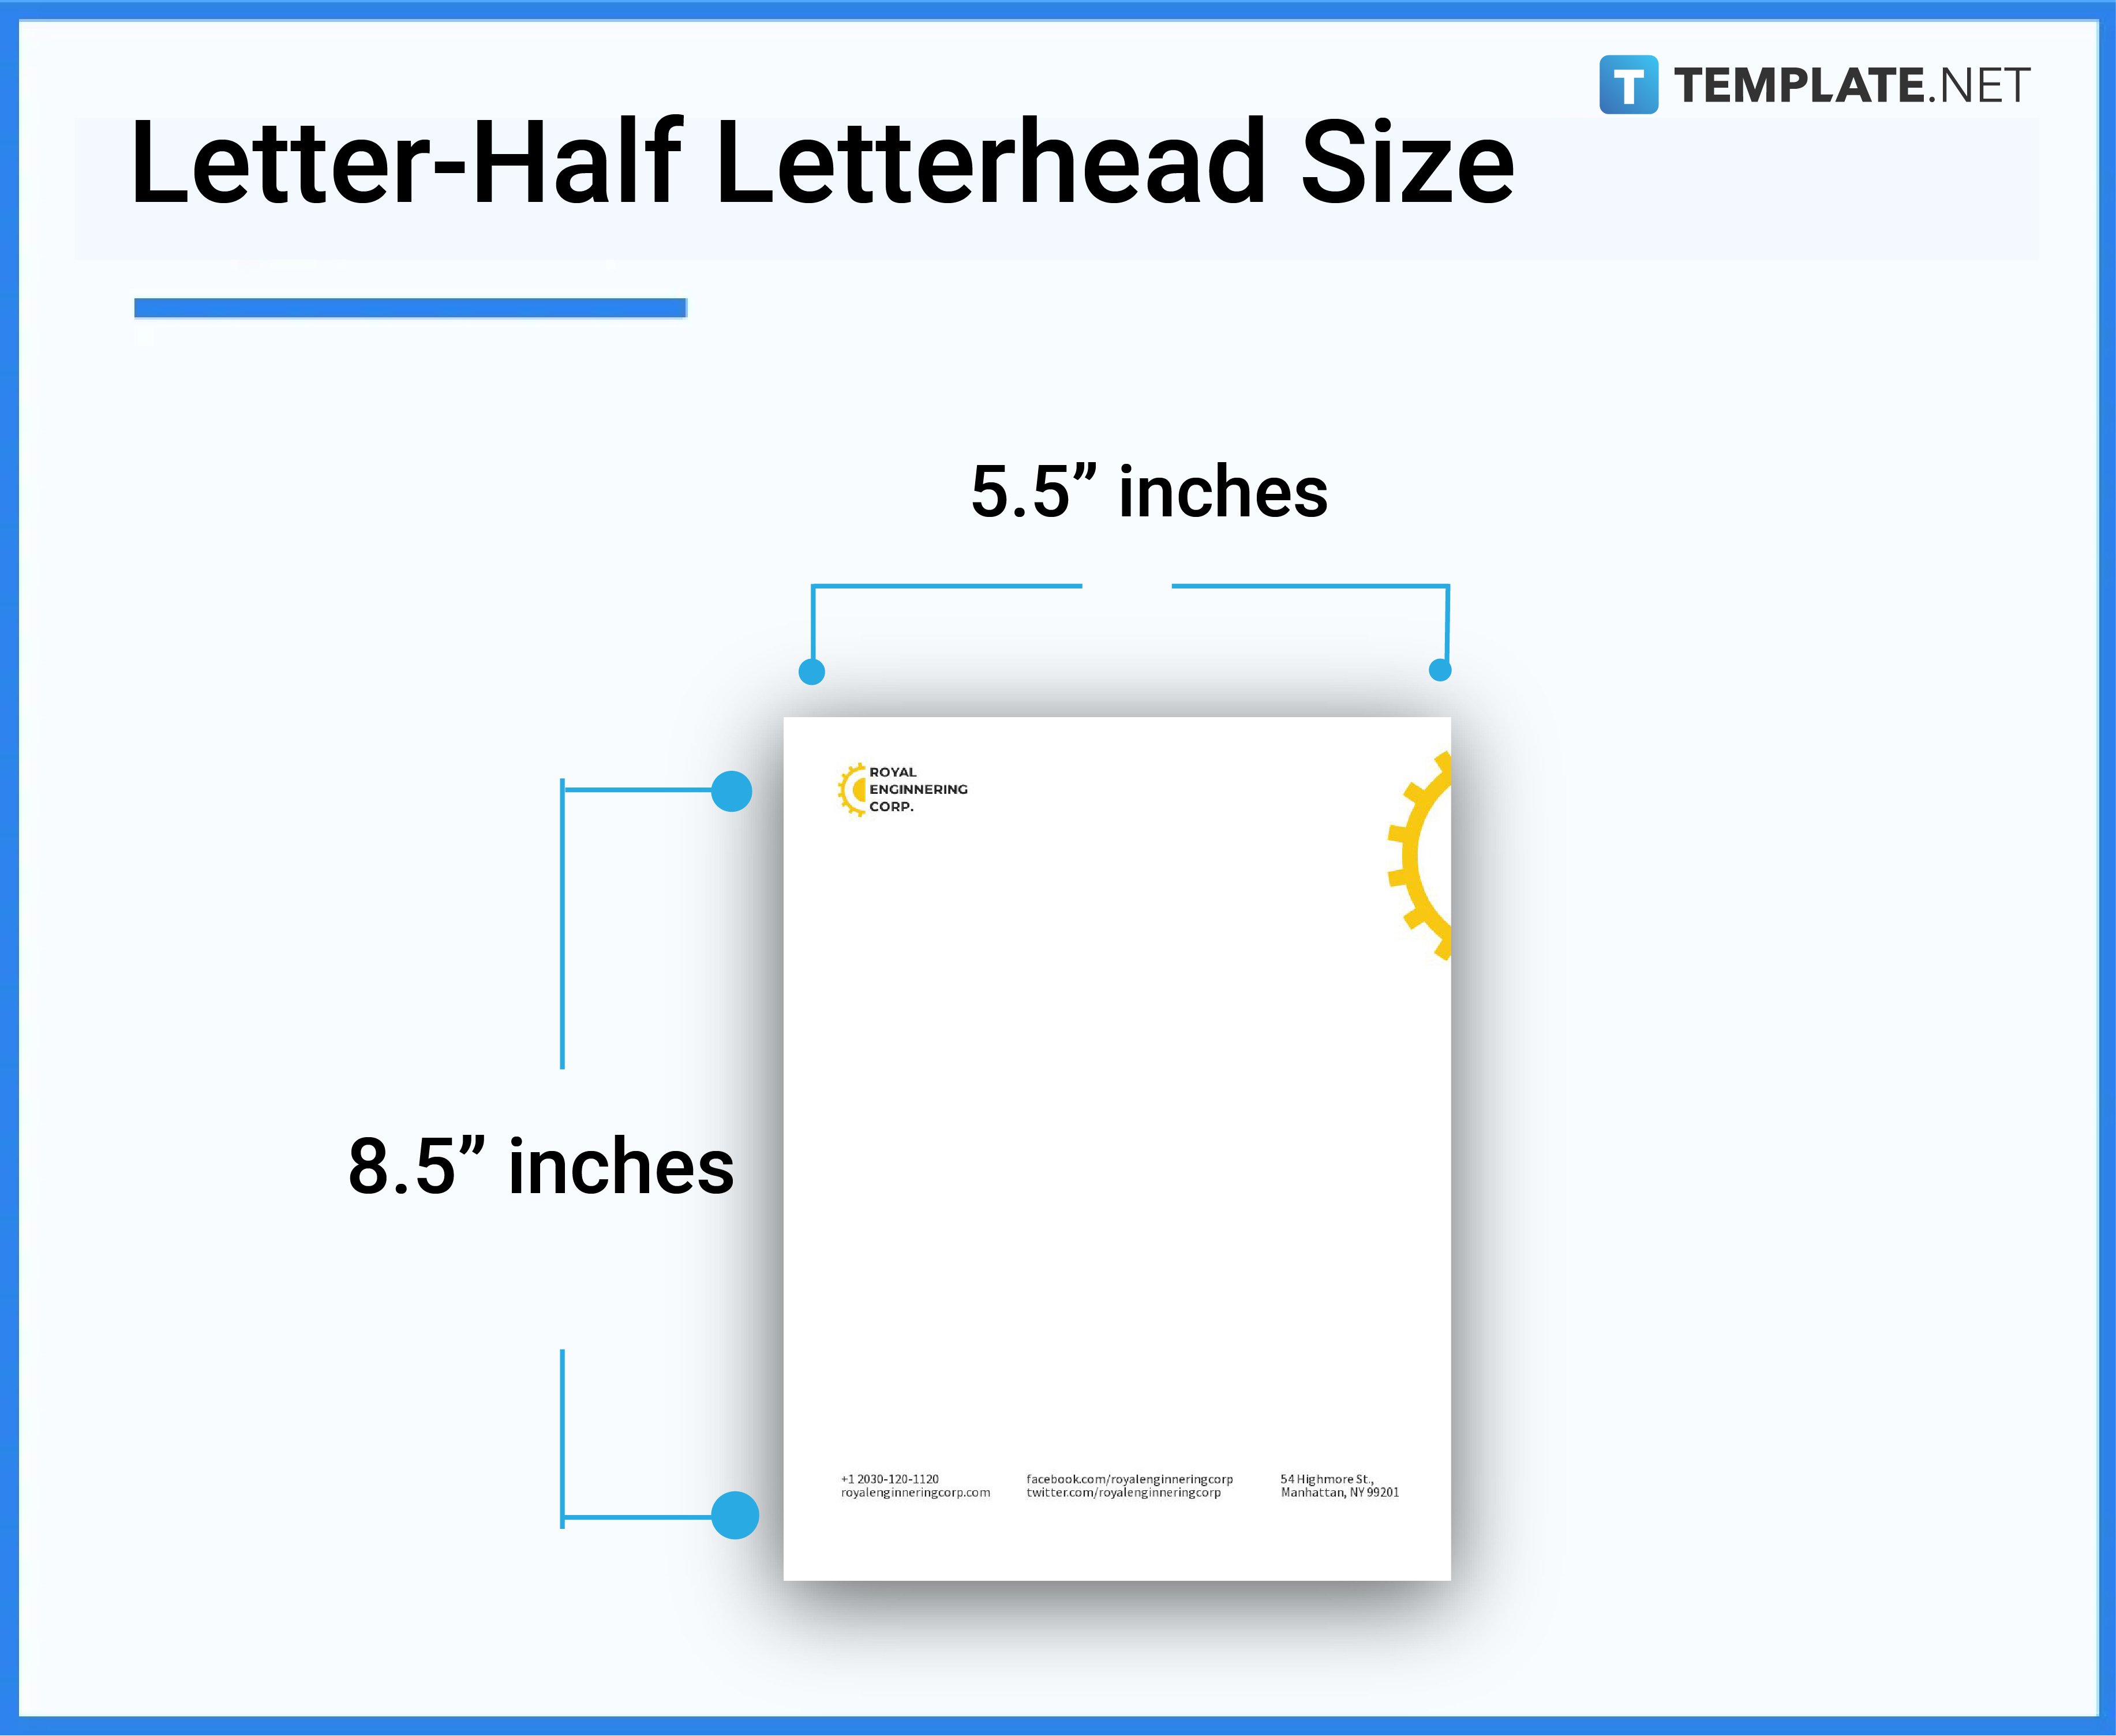 Letterhead Size - Inches, Pixels